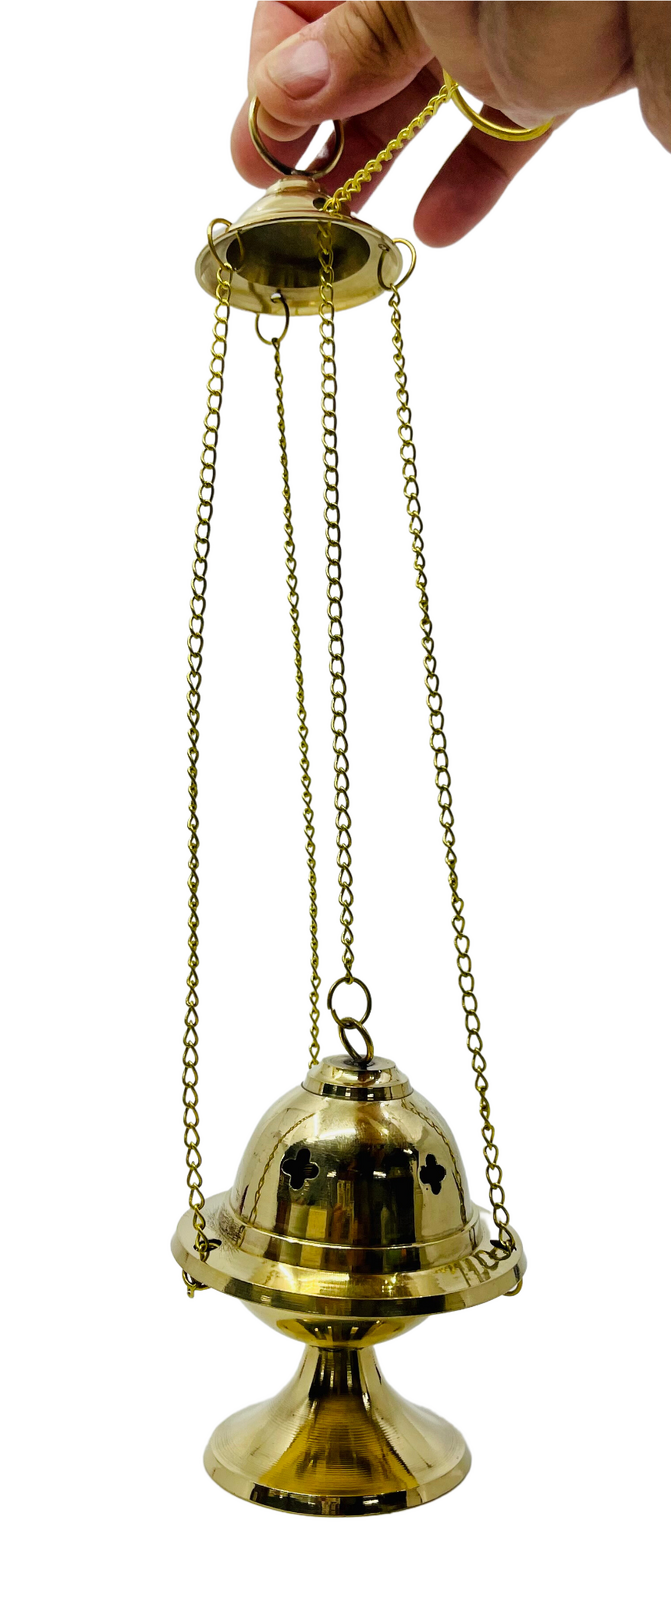 Incense Holder Hanging Censer Brass Adjustable Lid